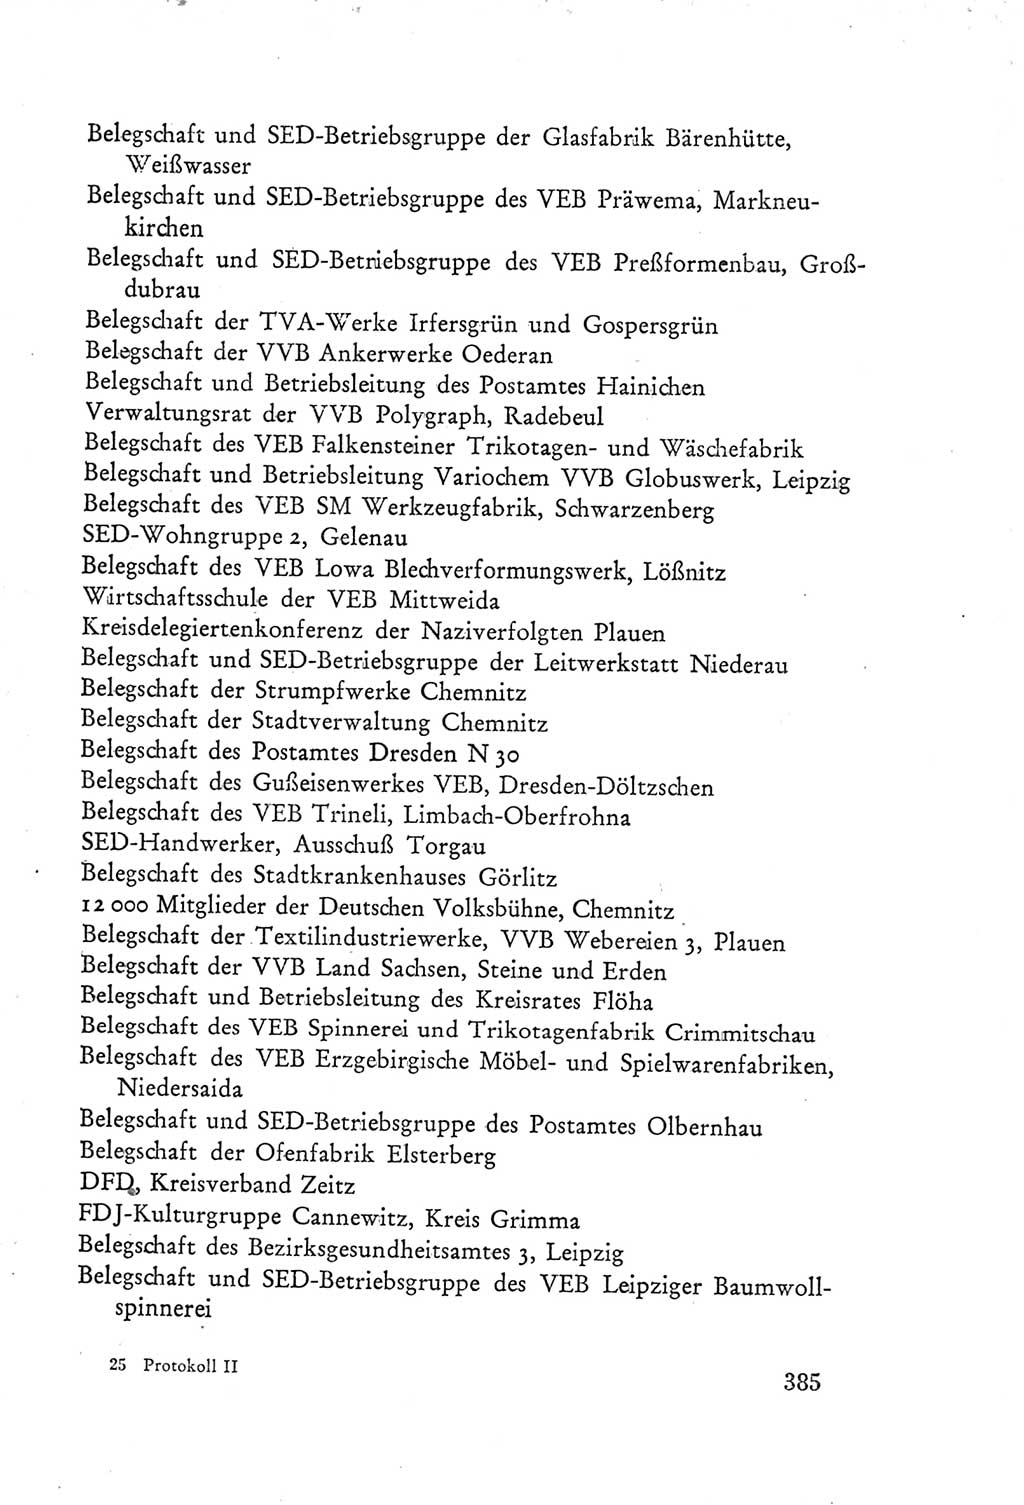 Protokoll der Verhandlungen des Ⅲ. Parteitages der Sozialistischen Einheitspartei Deutschlands (SED) [Deutsche Demokratische Republik (DDR)] 1950, Band 2, Seite 385 (Prot. Verh. Ⅲ. PT SED DDR 1950, Bd. 2, S. 385)